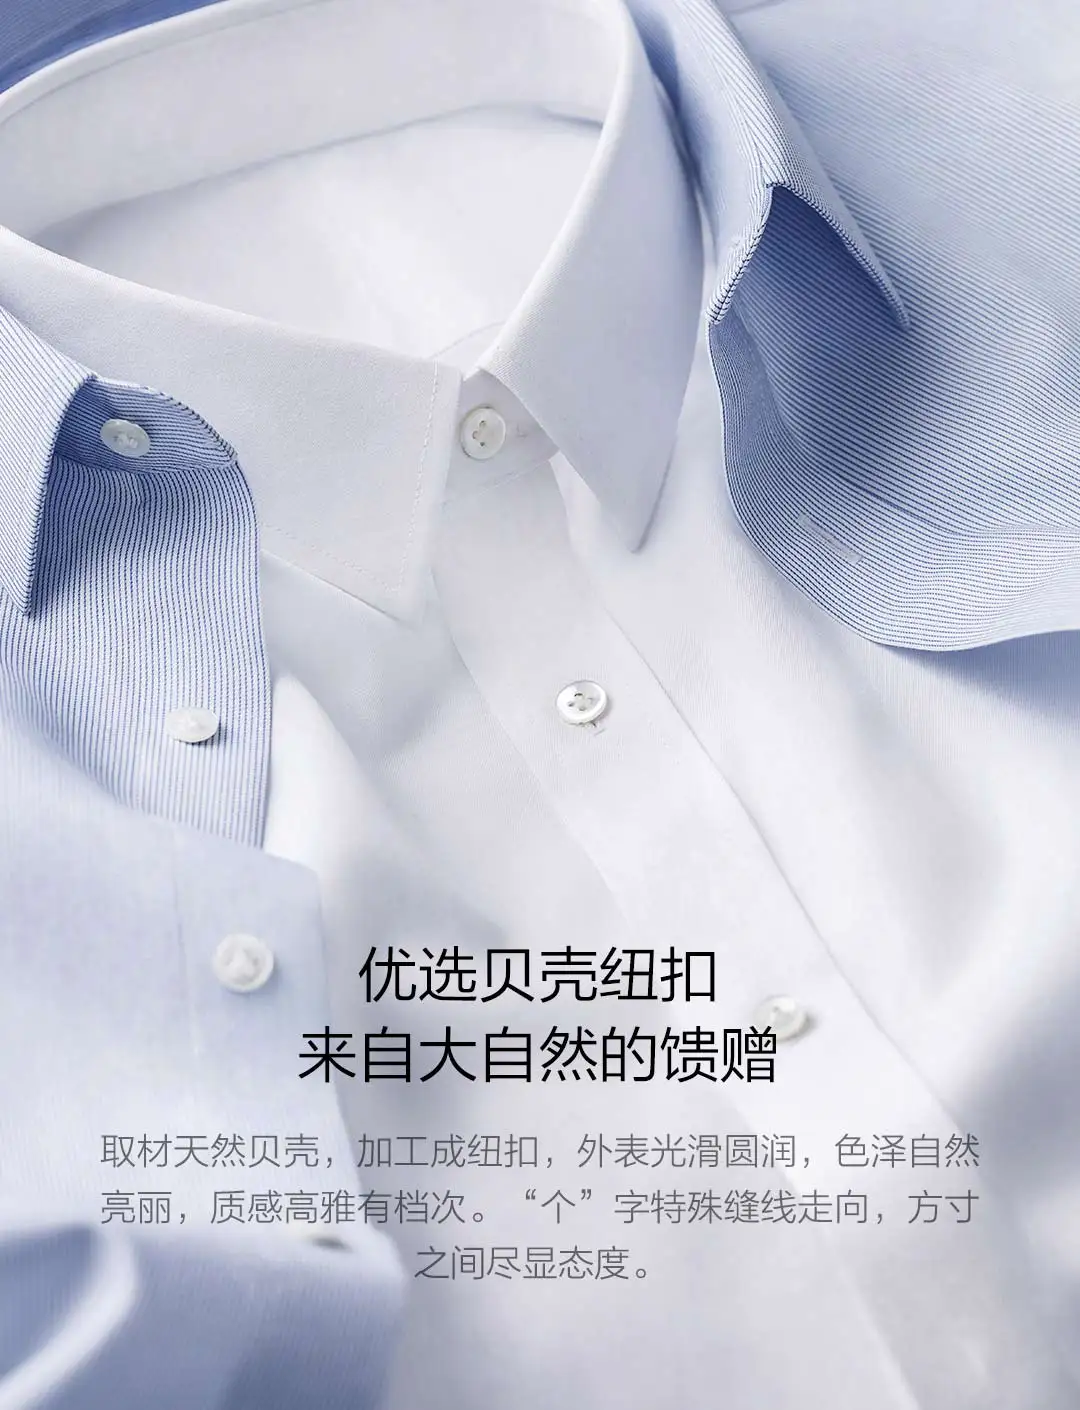 Xiaomi 90Fun мужские рубашки с длинным рукавом против морщин масло водостойкий хлопок дышащий Повседневный бизнесмен для глажки рубашек бесплатно